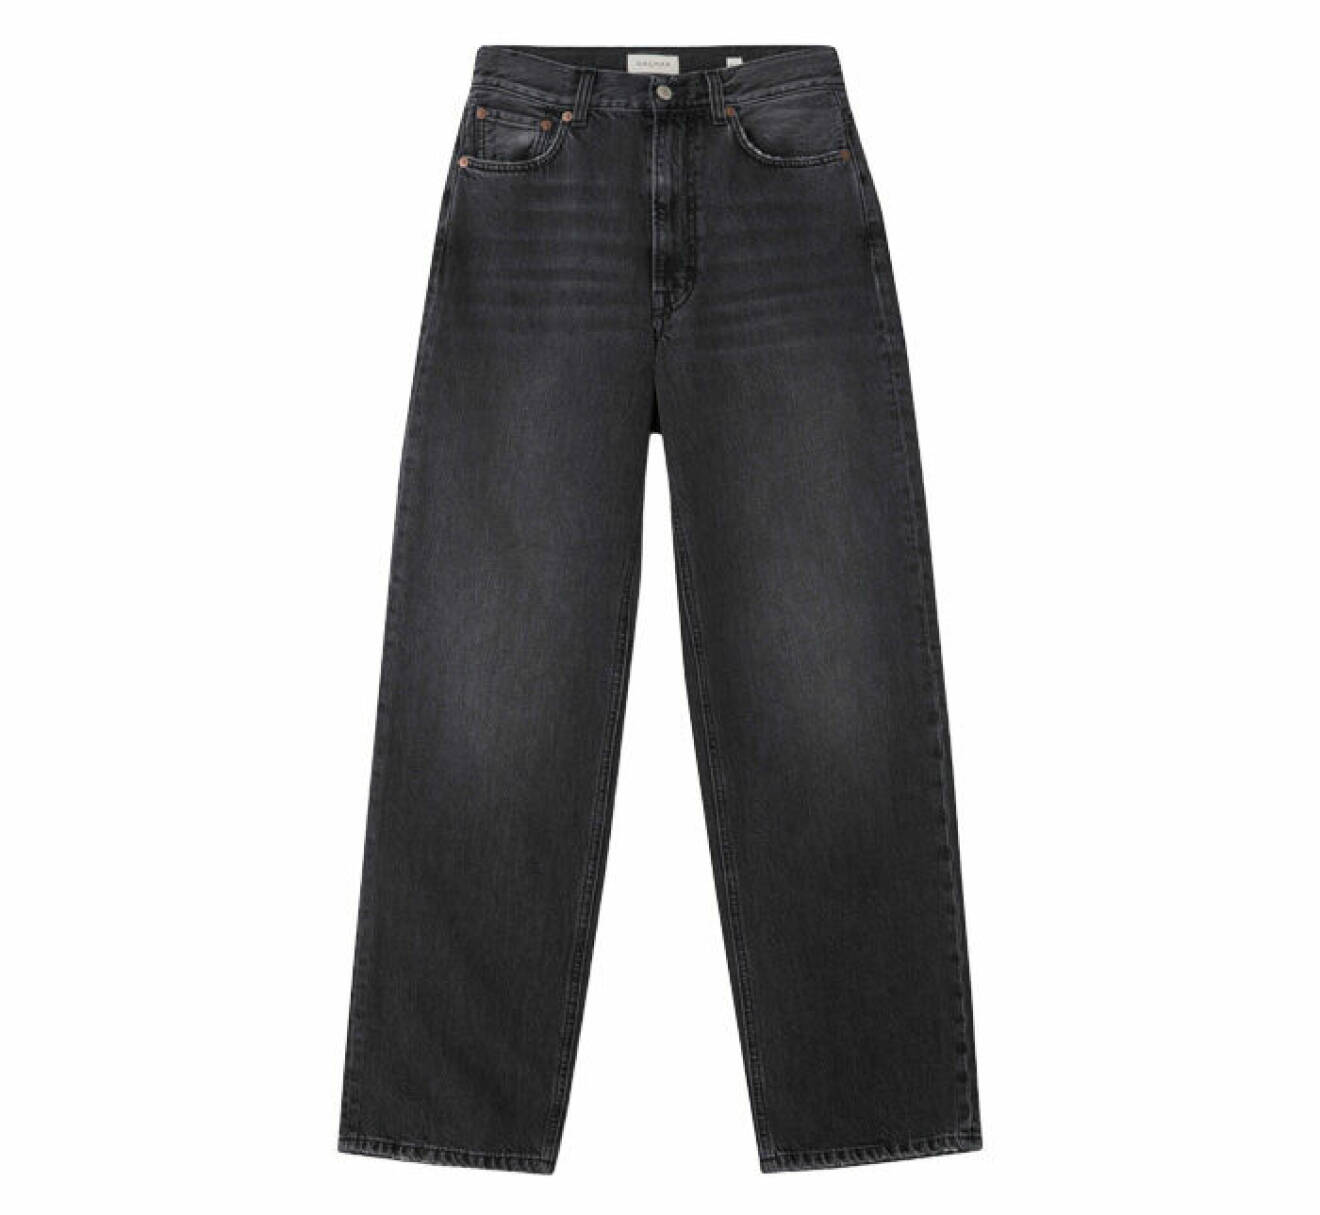 vida jeans i grå nyans med avslappnad passform från Dagmars jeanskollektion